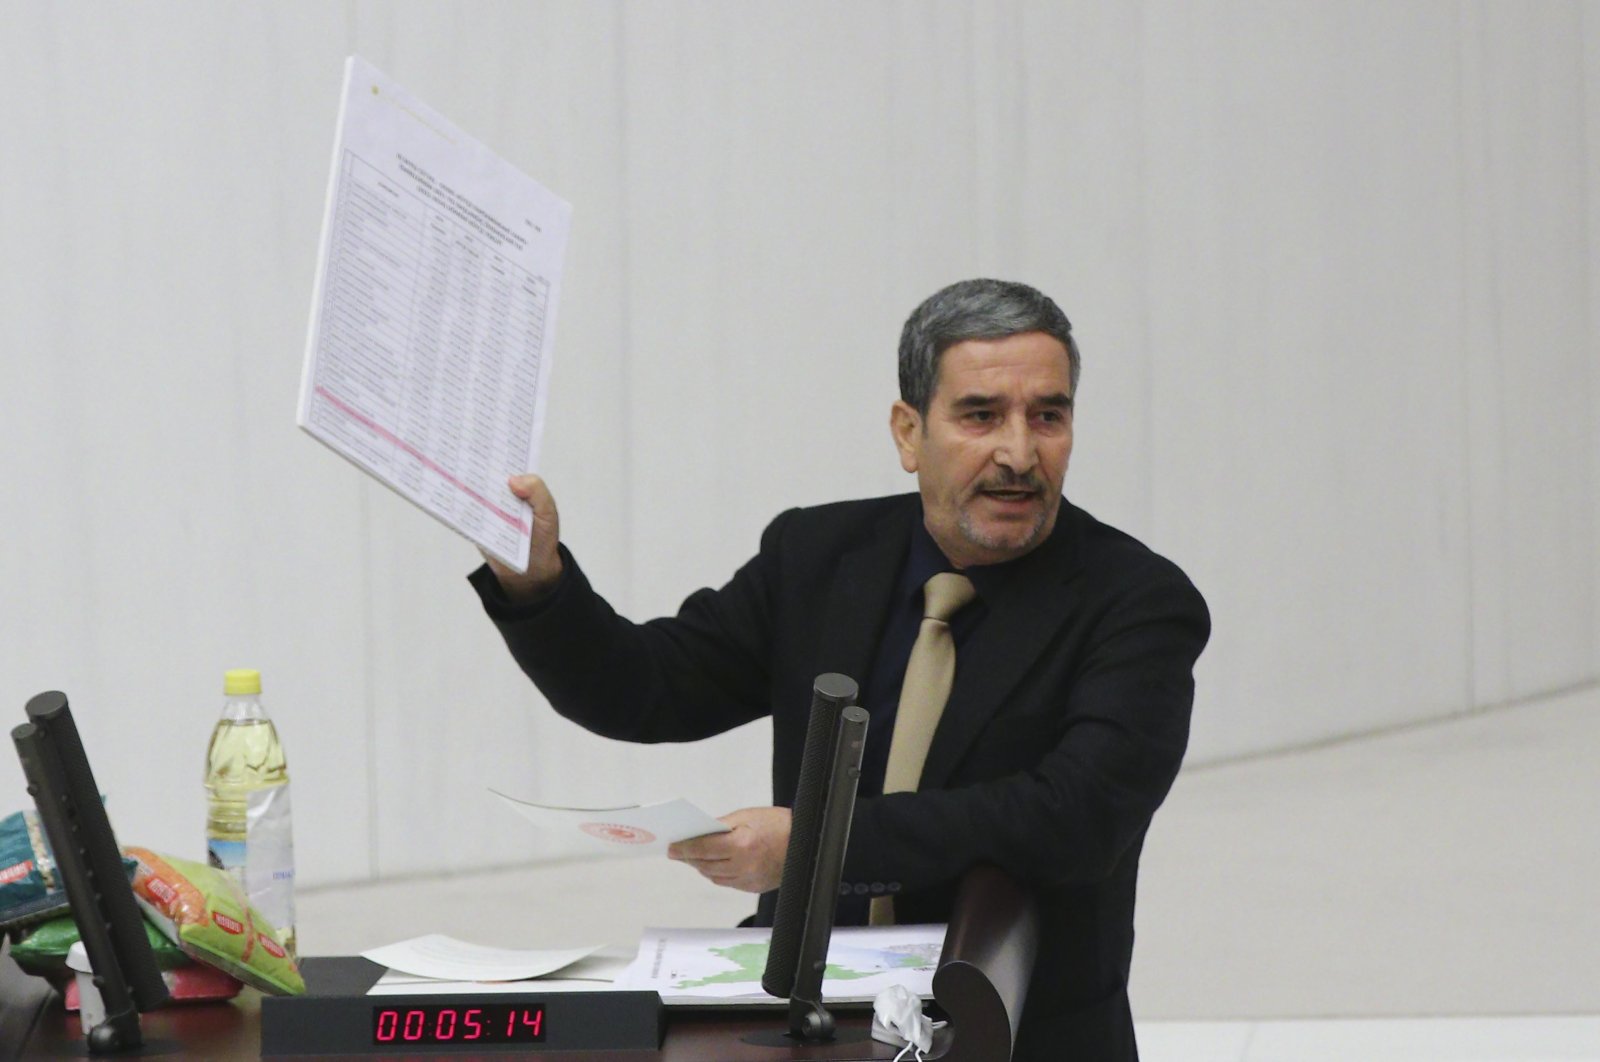 Parlemen menghukum anggota parlemen HDP karena meneriakkan ‘Kebebasan untuk Kurdistan’